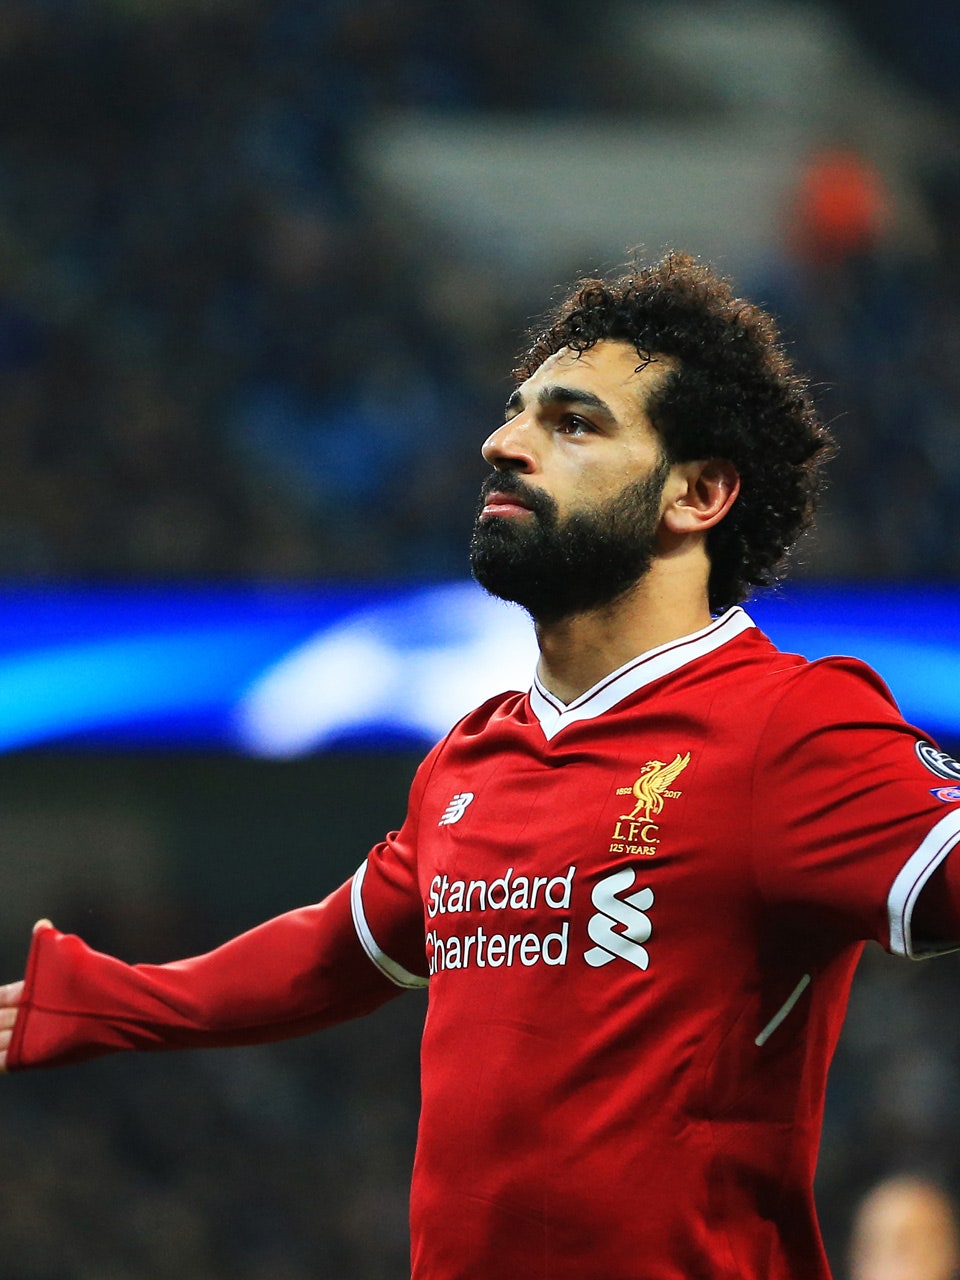 Should Mo Salah win the Ballon d'Or?